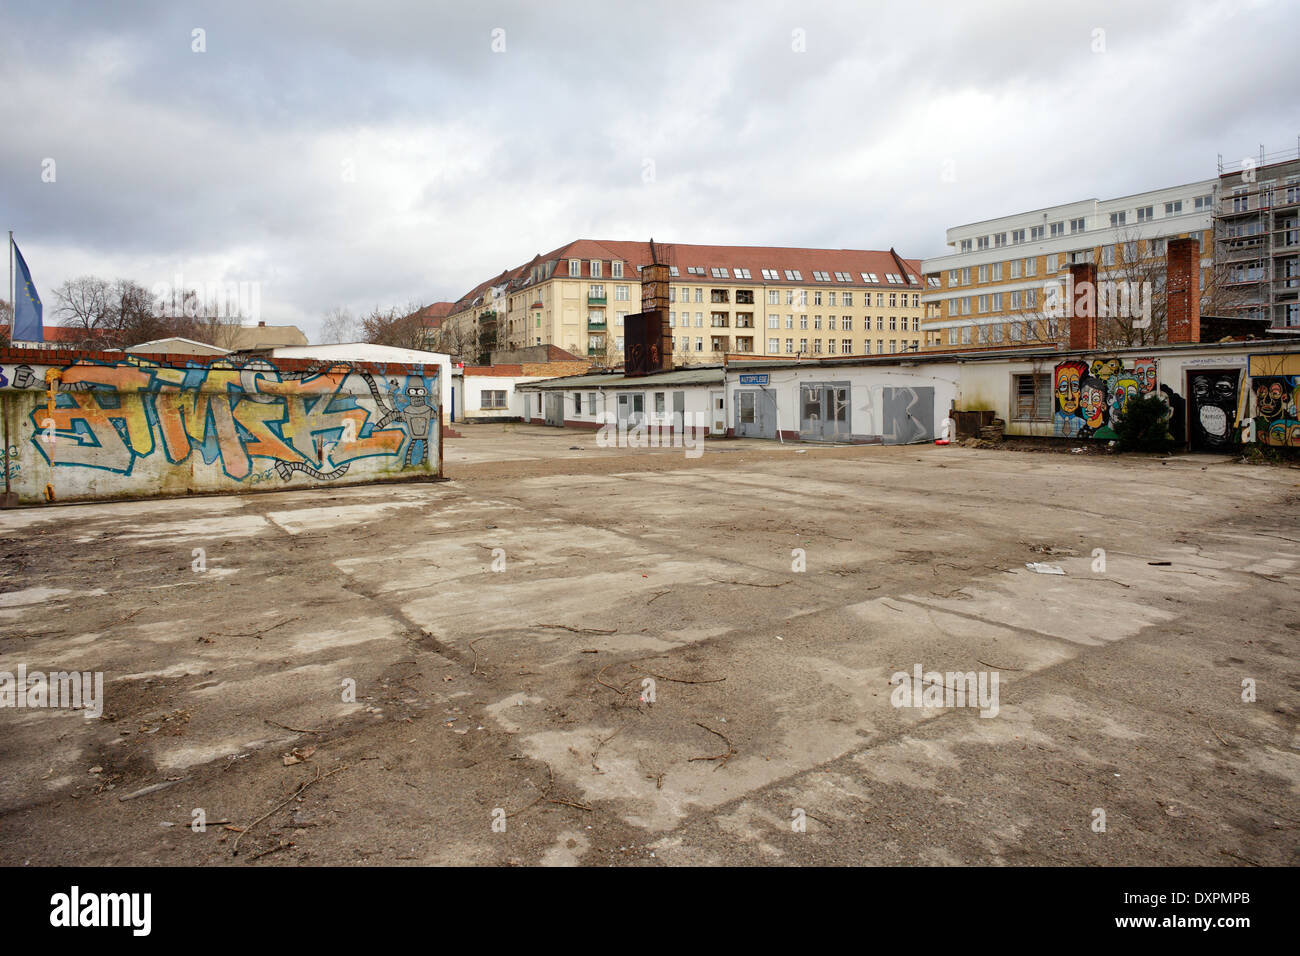 Berlin, Deutschland, leer stehende Gelände in Berlin - Friedrichshain Stockfoto